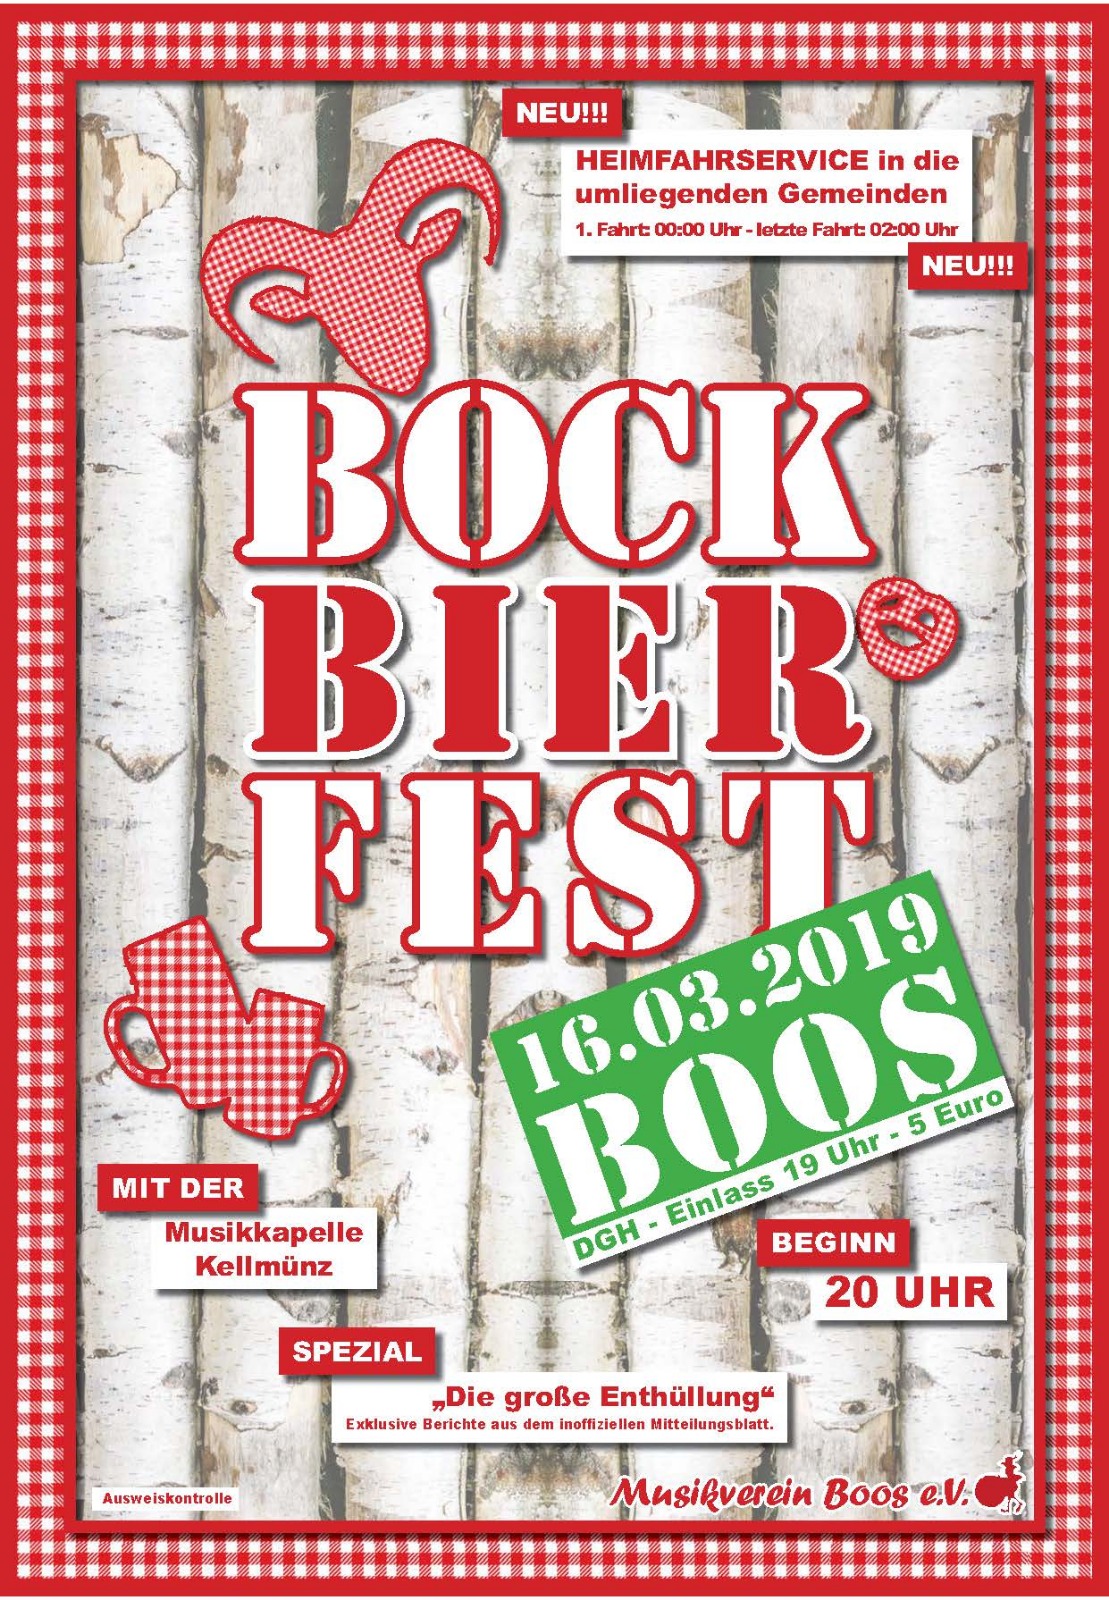 Plakat Bockbierfest in Boos